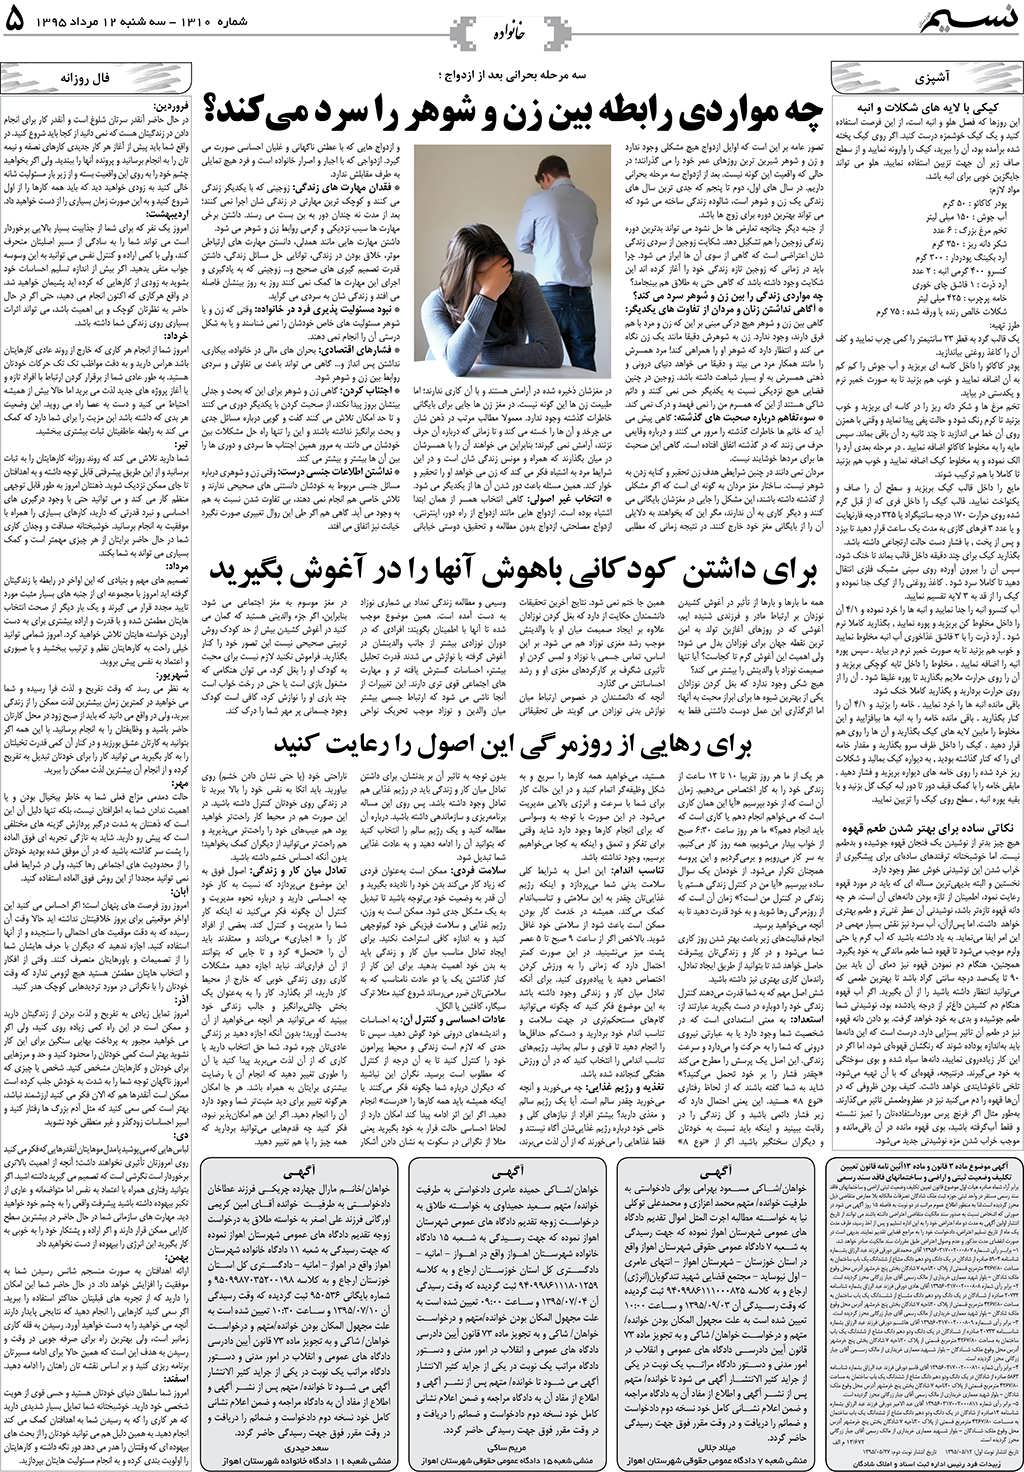 صفحه خانواده روزنامه نسیم شماره 1310